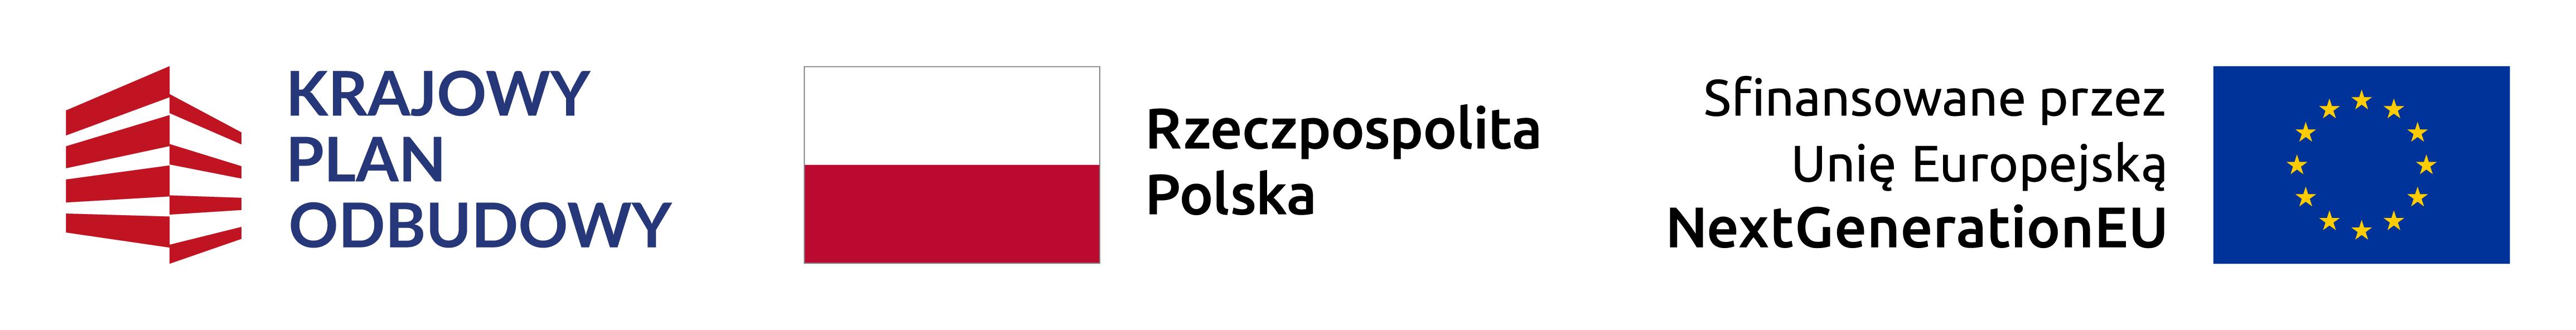 Banner: logo Krajowy Plan Odbudowy, flaga Polski, napis - Rzeczpospolita Polska, Sfinansowane przez Unię Europejską NextGenerationEU, flaga UE